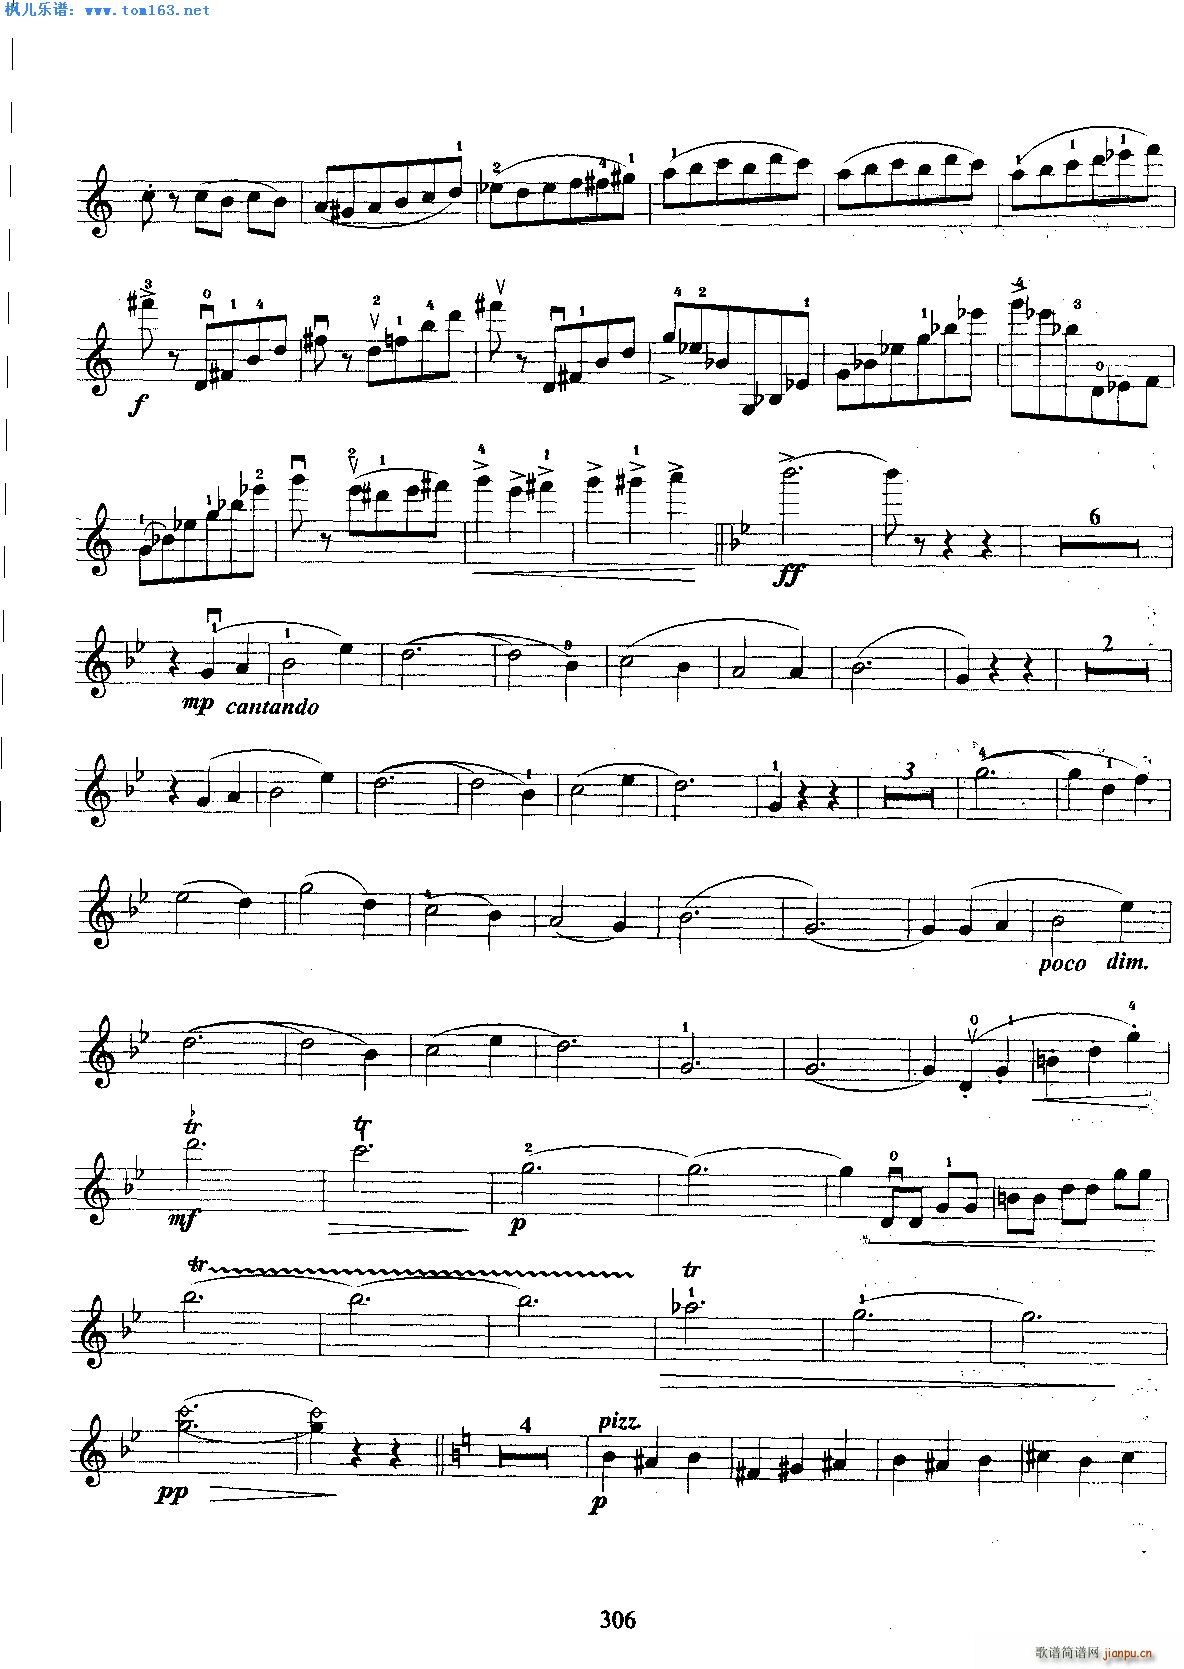 卡巴列夫斯基青年协奏曲第一乐章 2